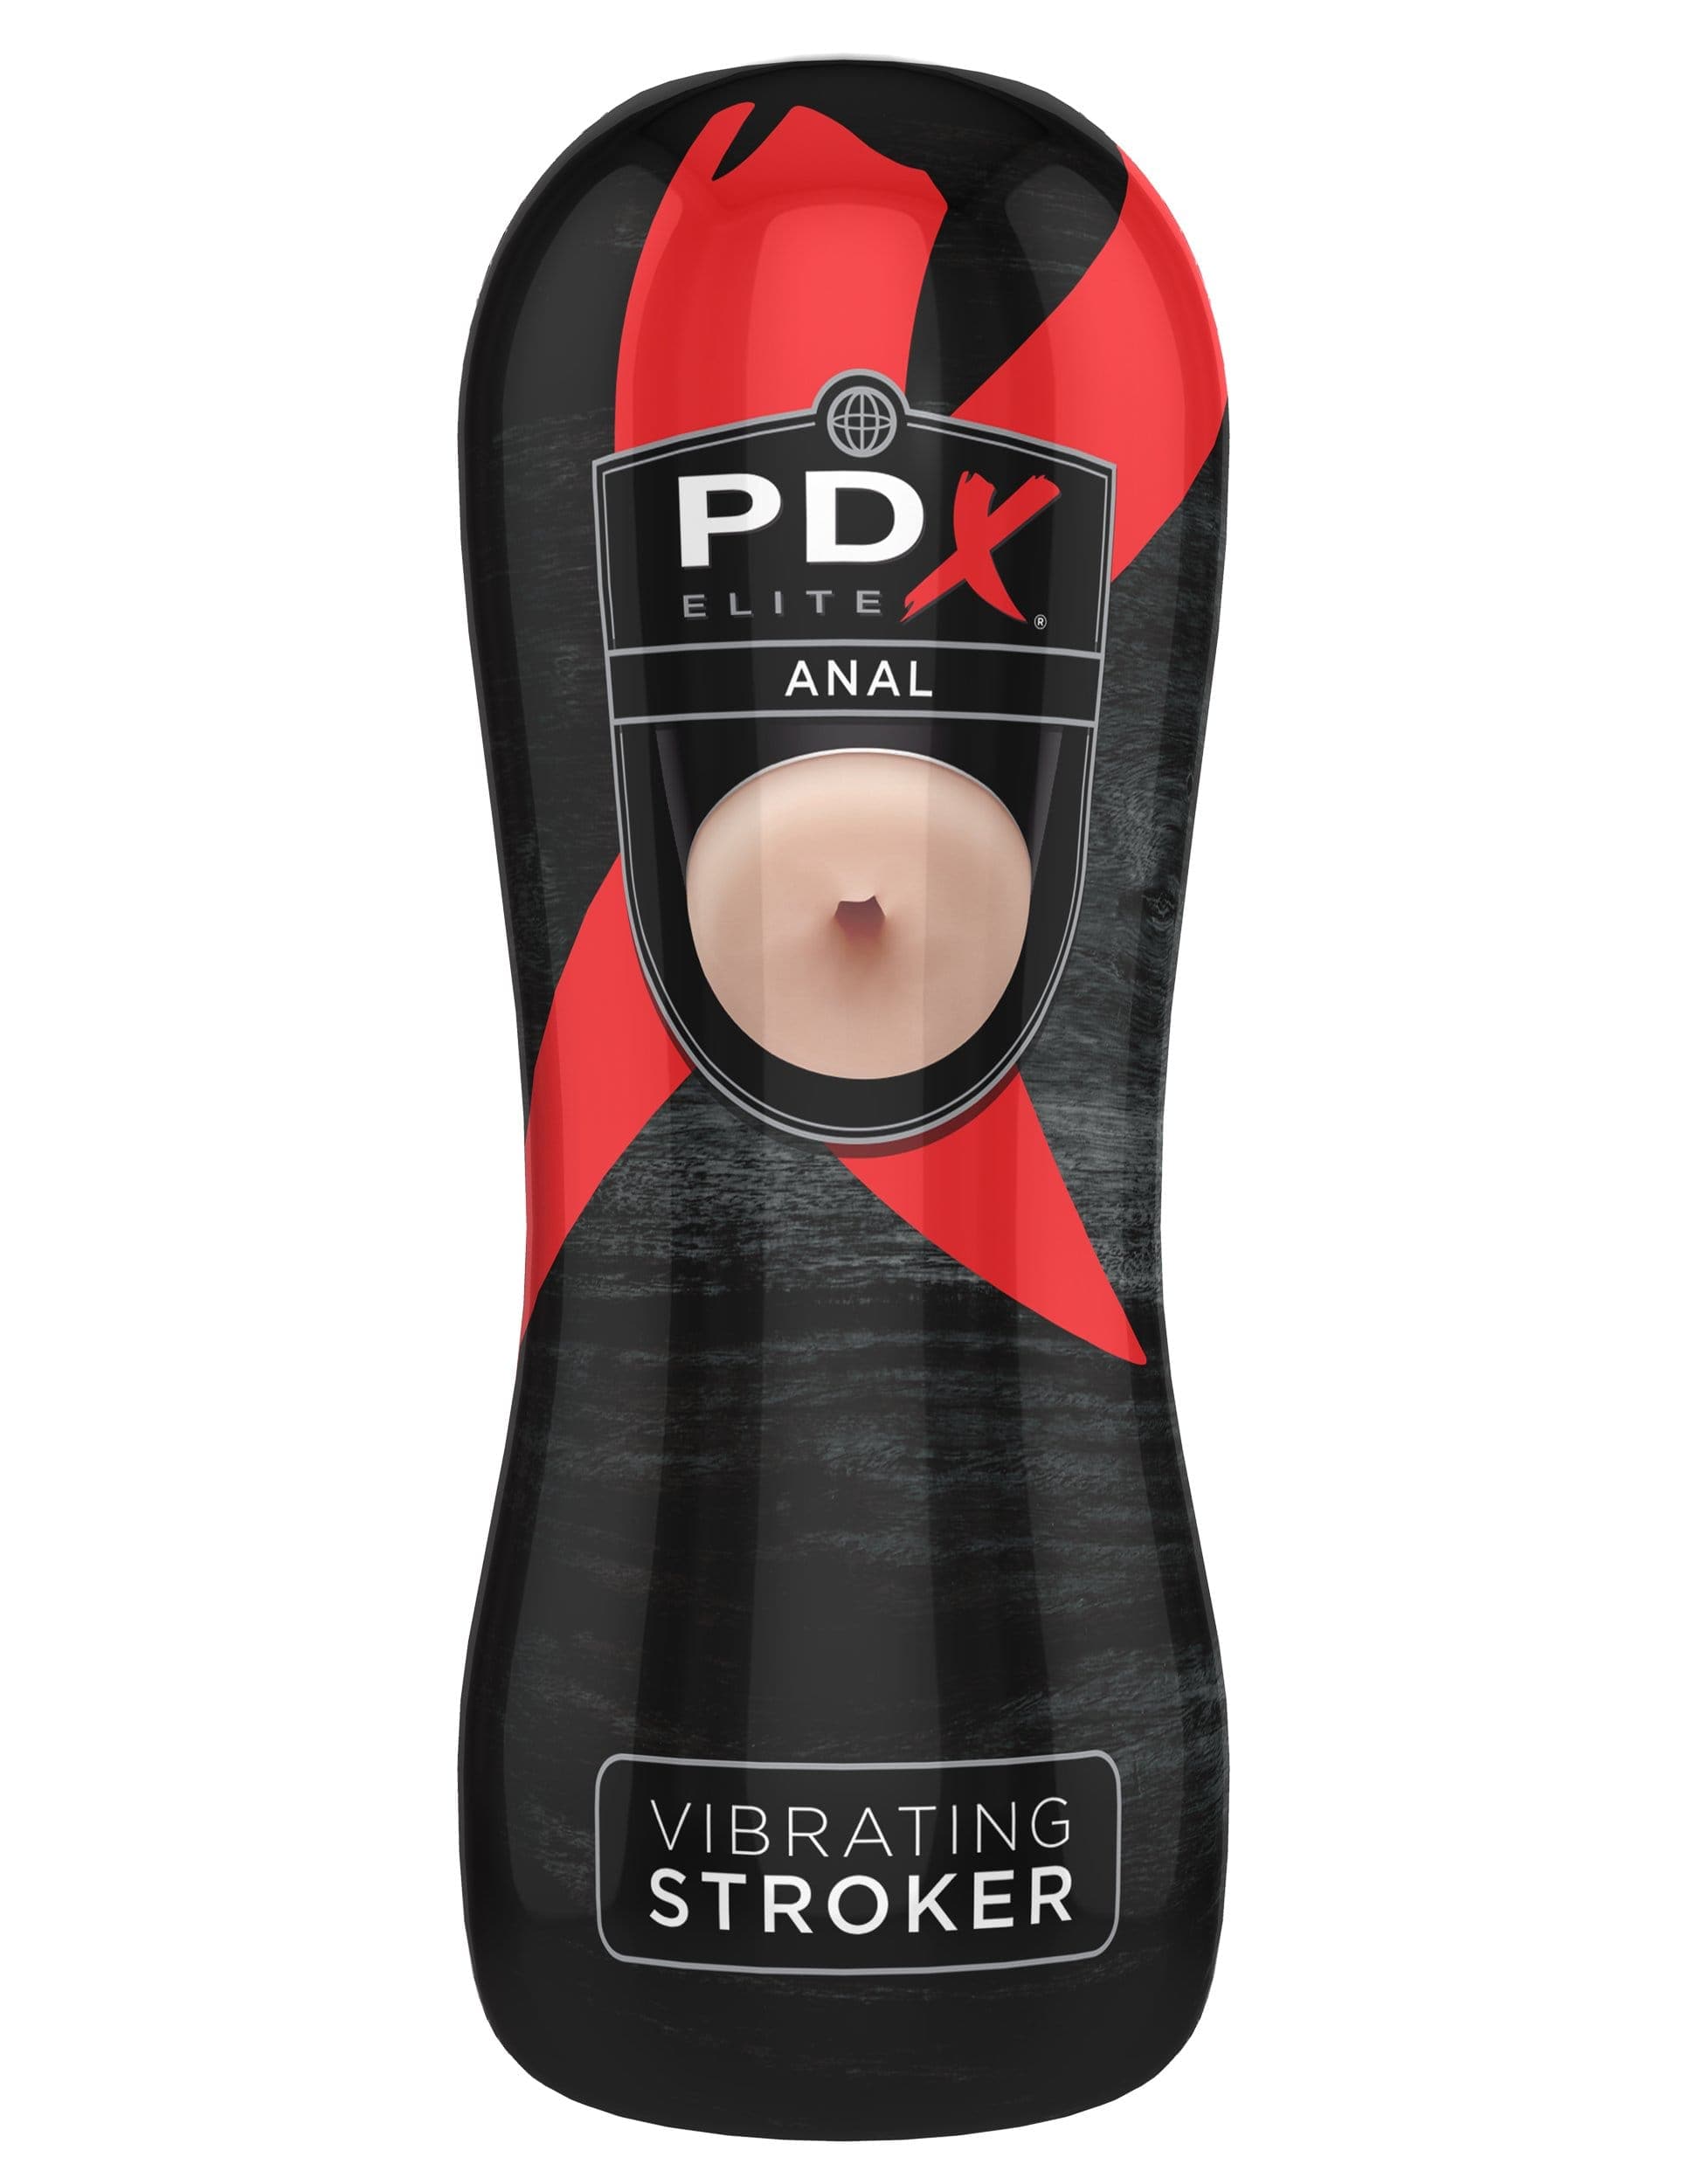 pdx elite vibrating stroker anal